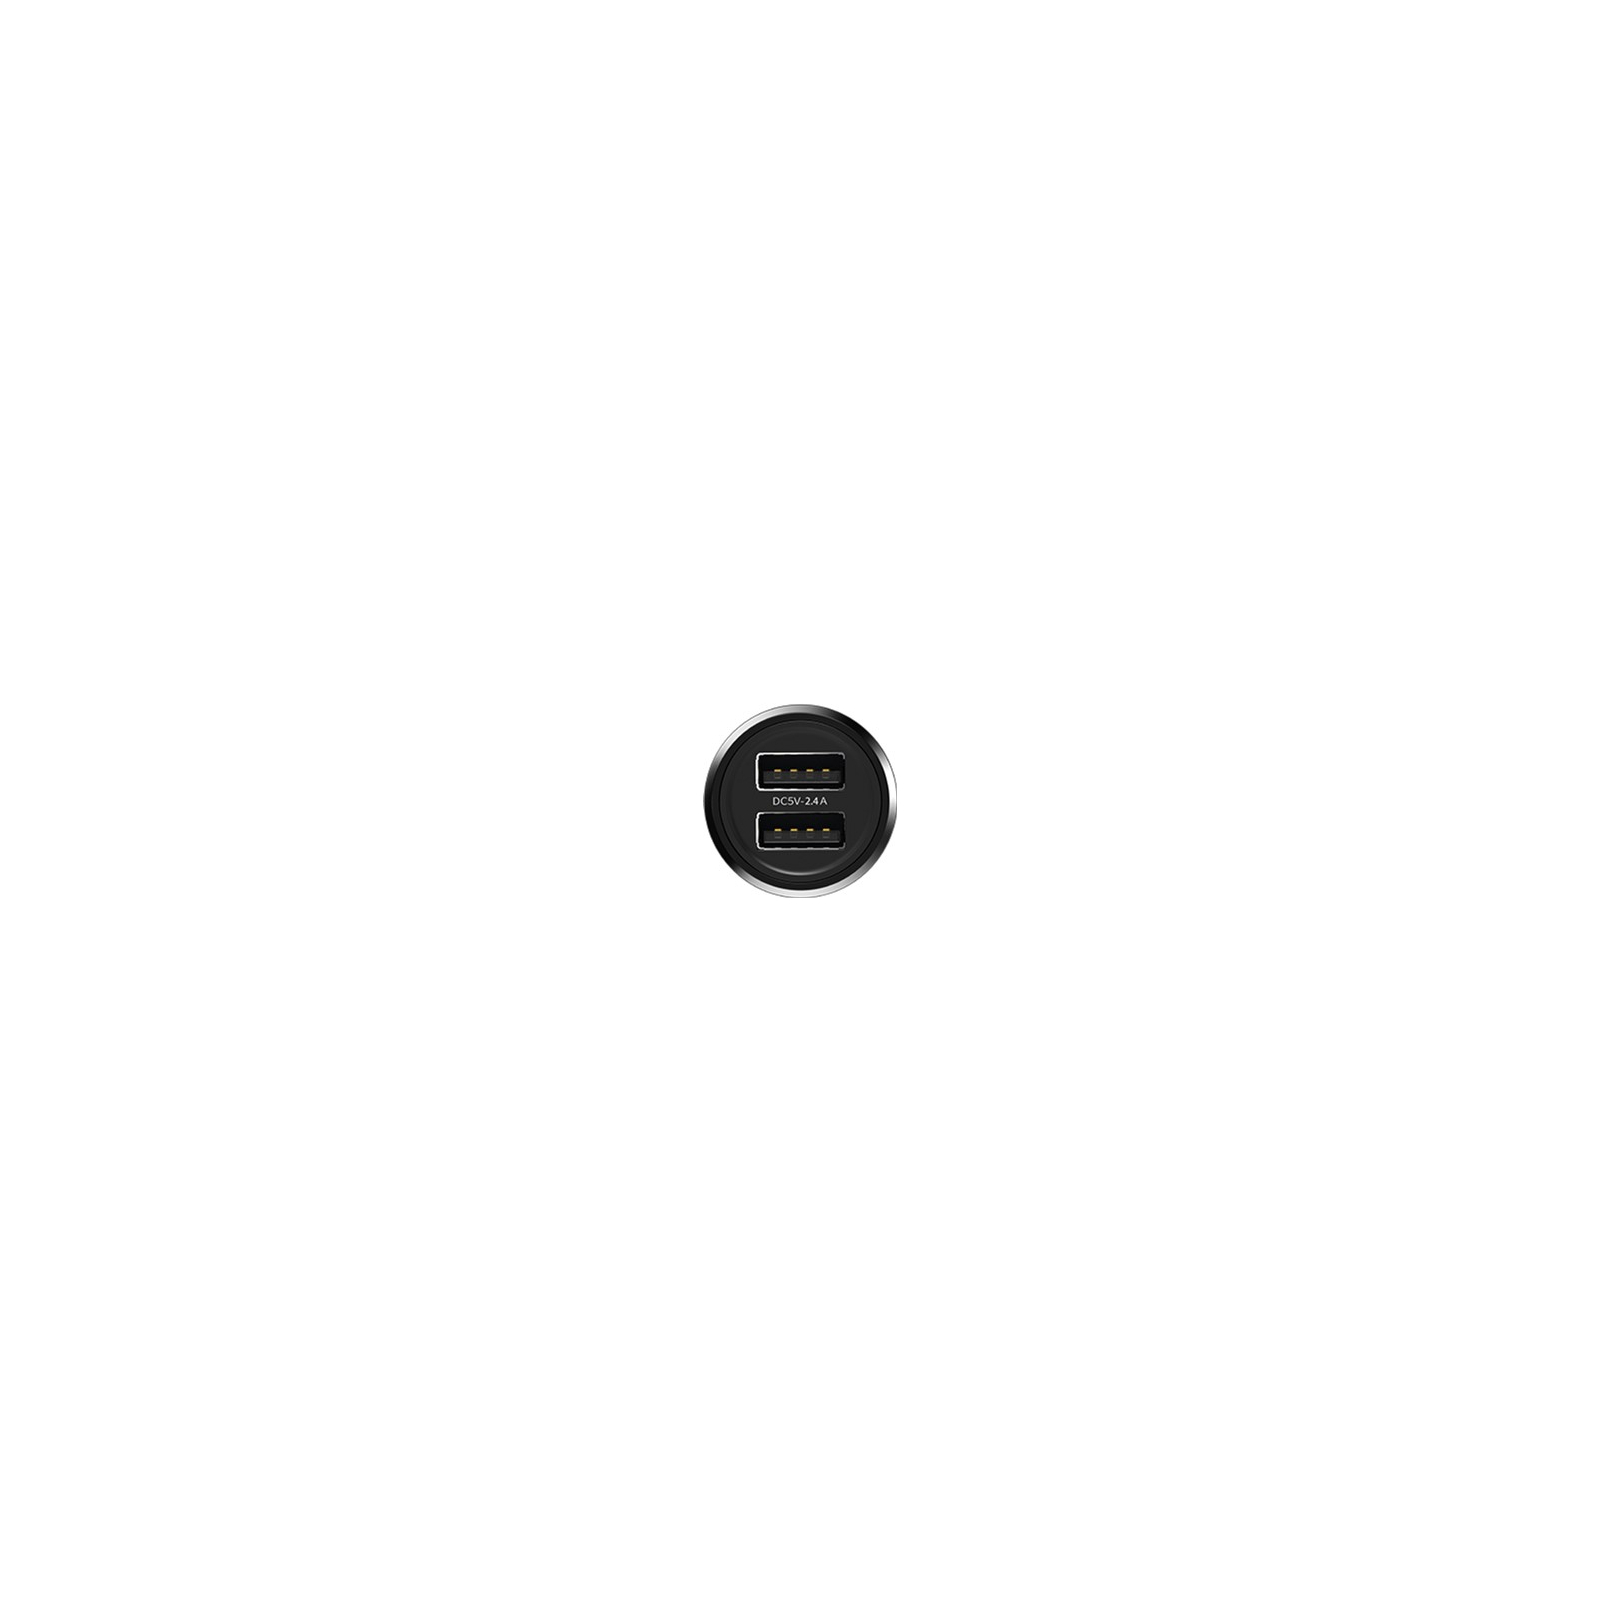 Зарядний пристрій Proda Paul series PD-C27 black (PD-C27-BK) зображення 3